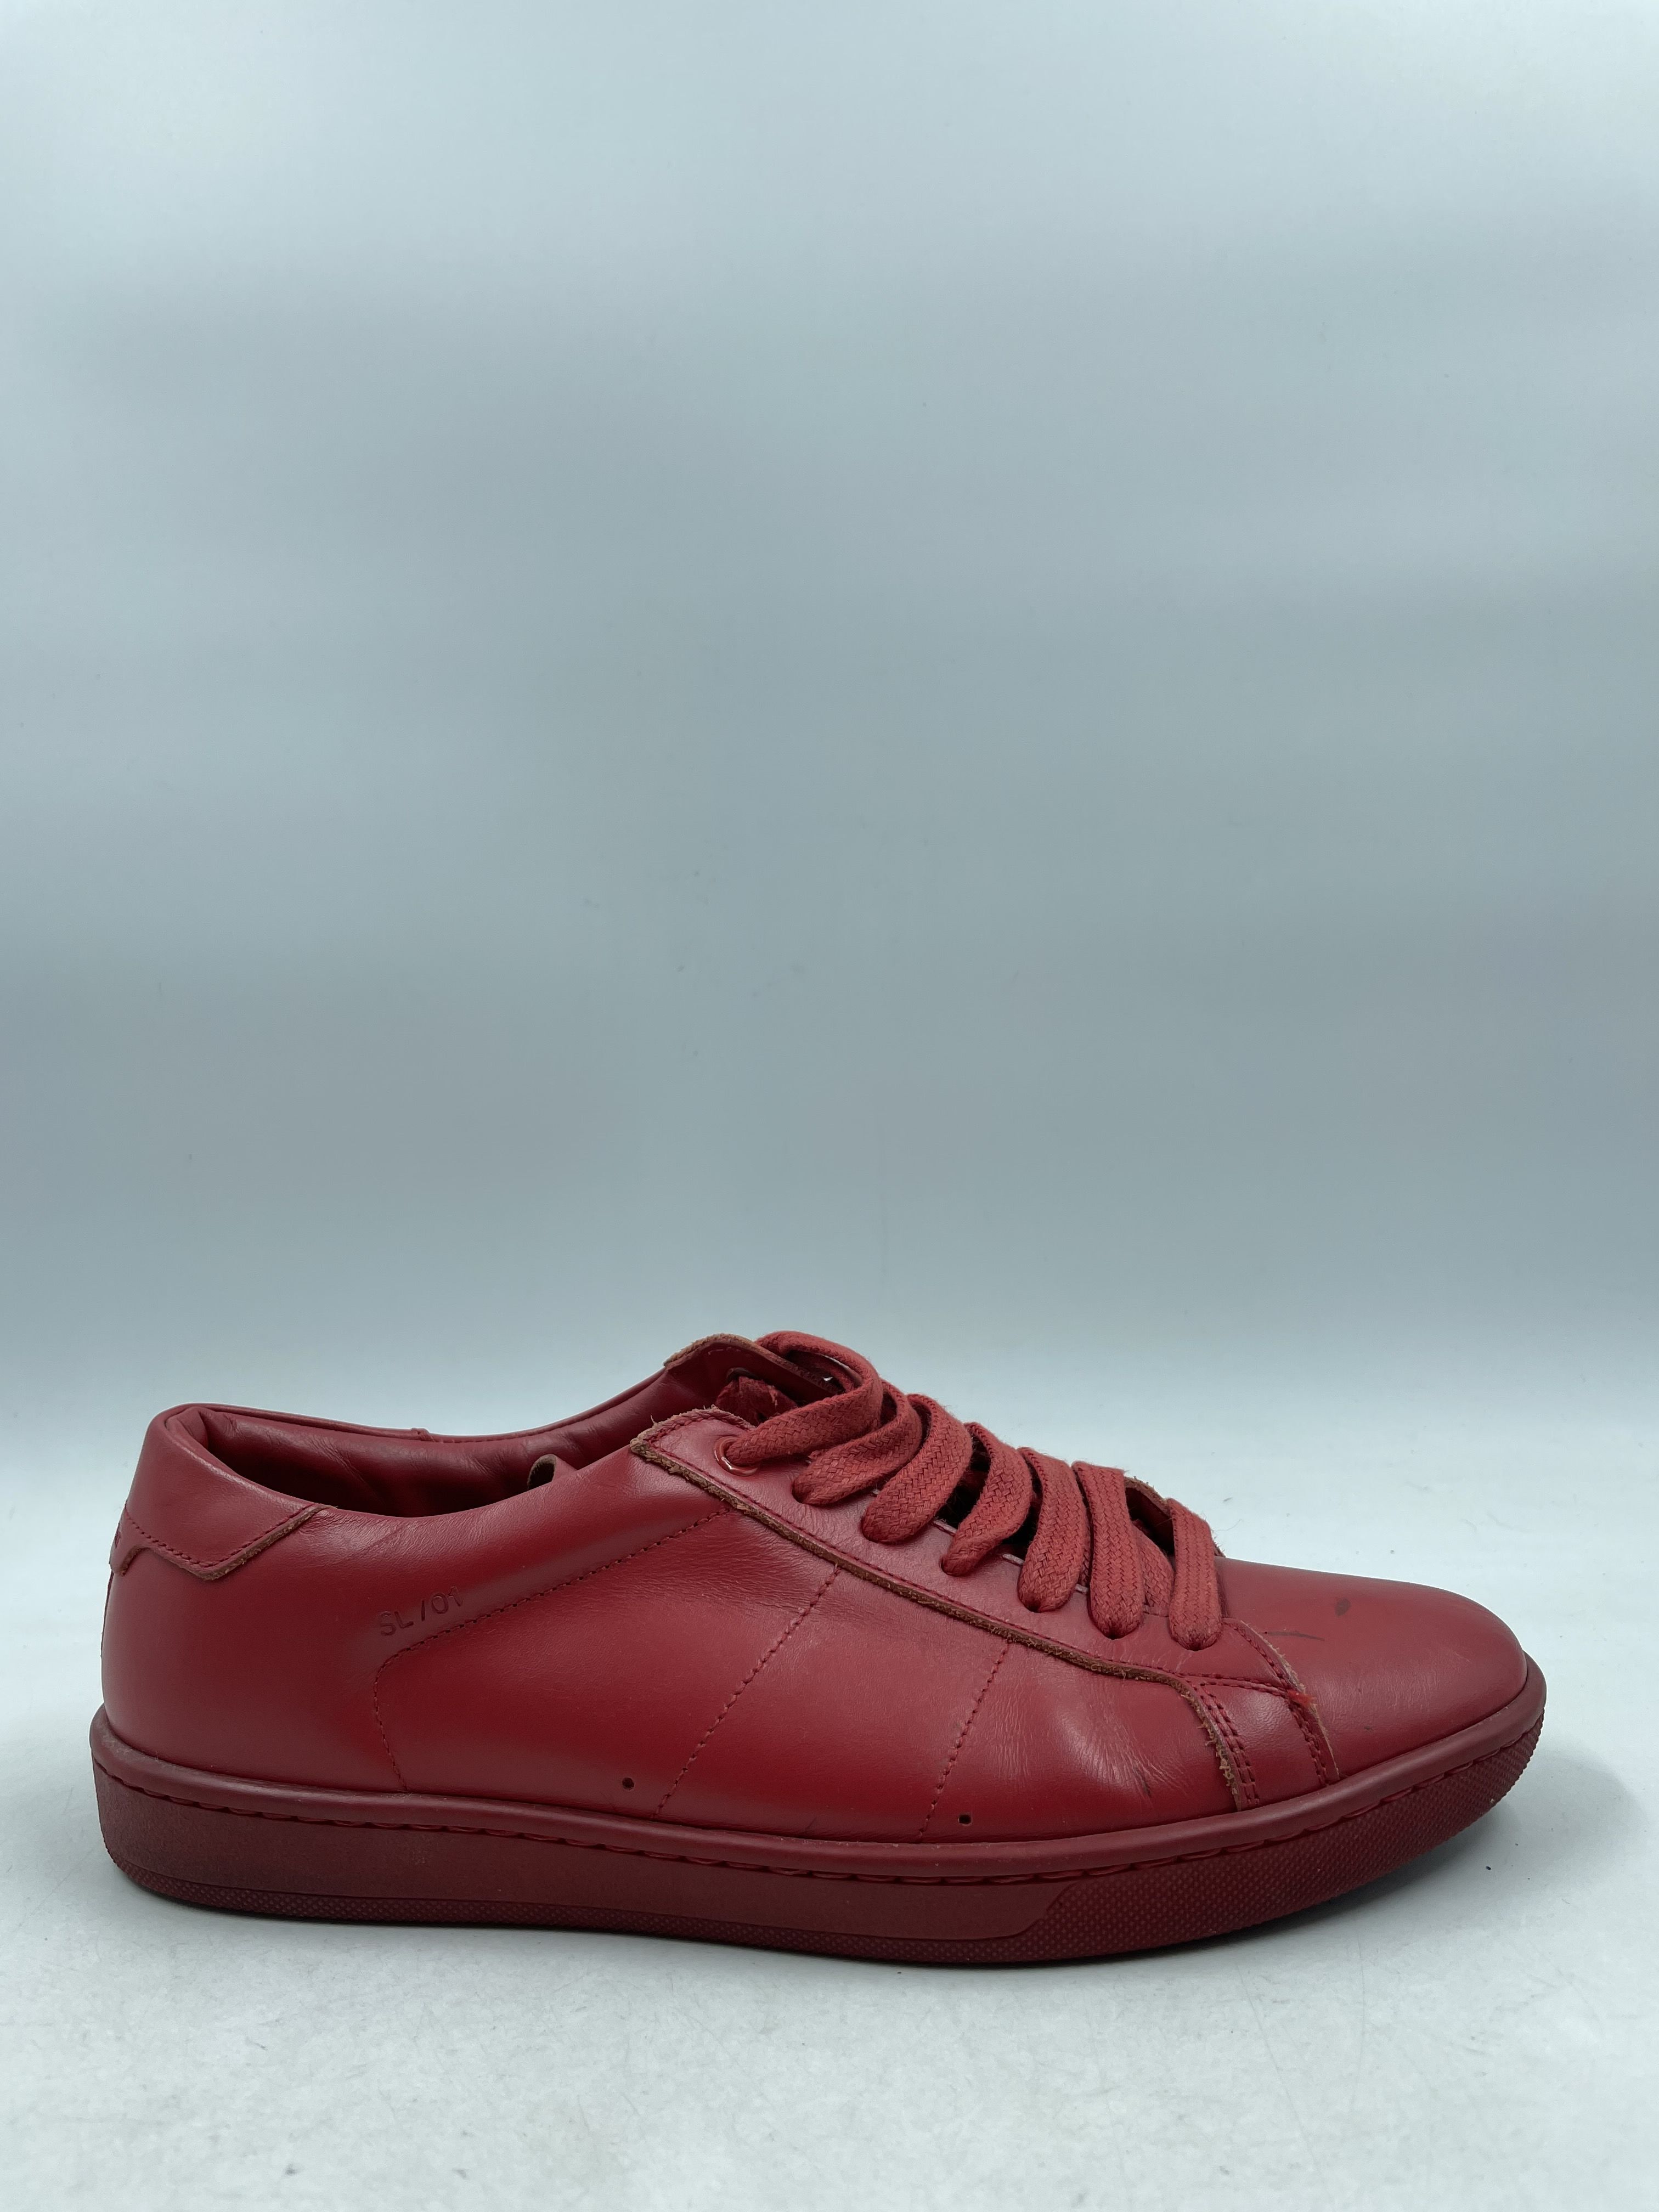 Hybrid slip-on | red | Sneakers Women's | Ferragamo GB